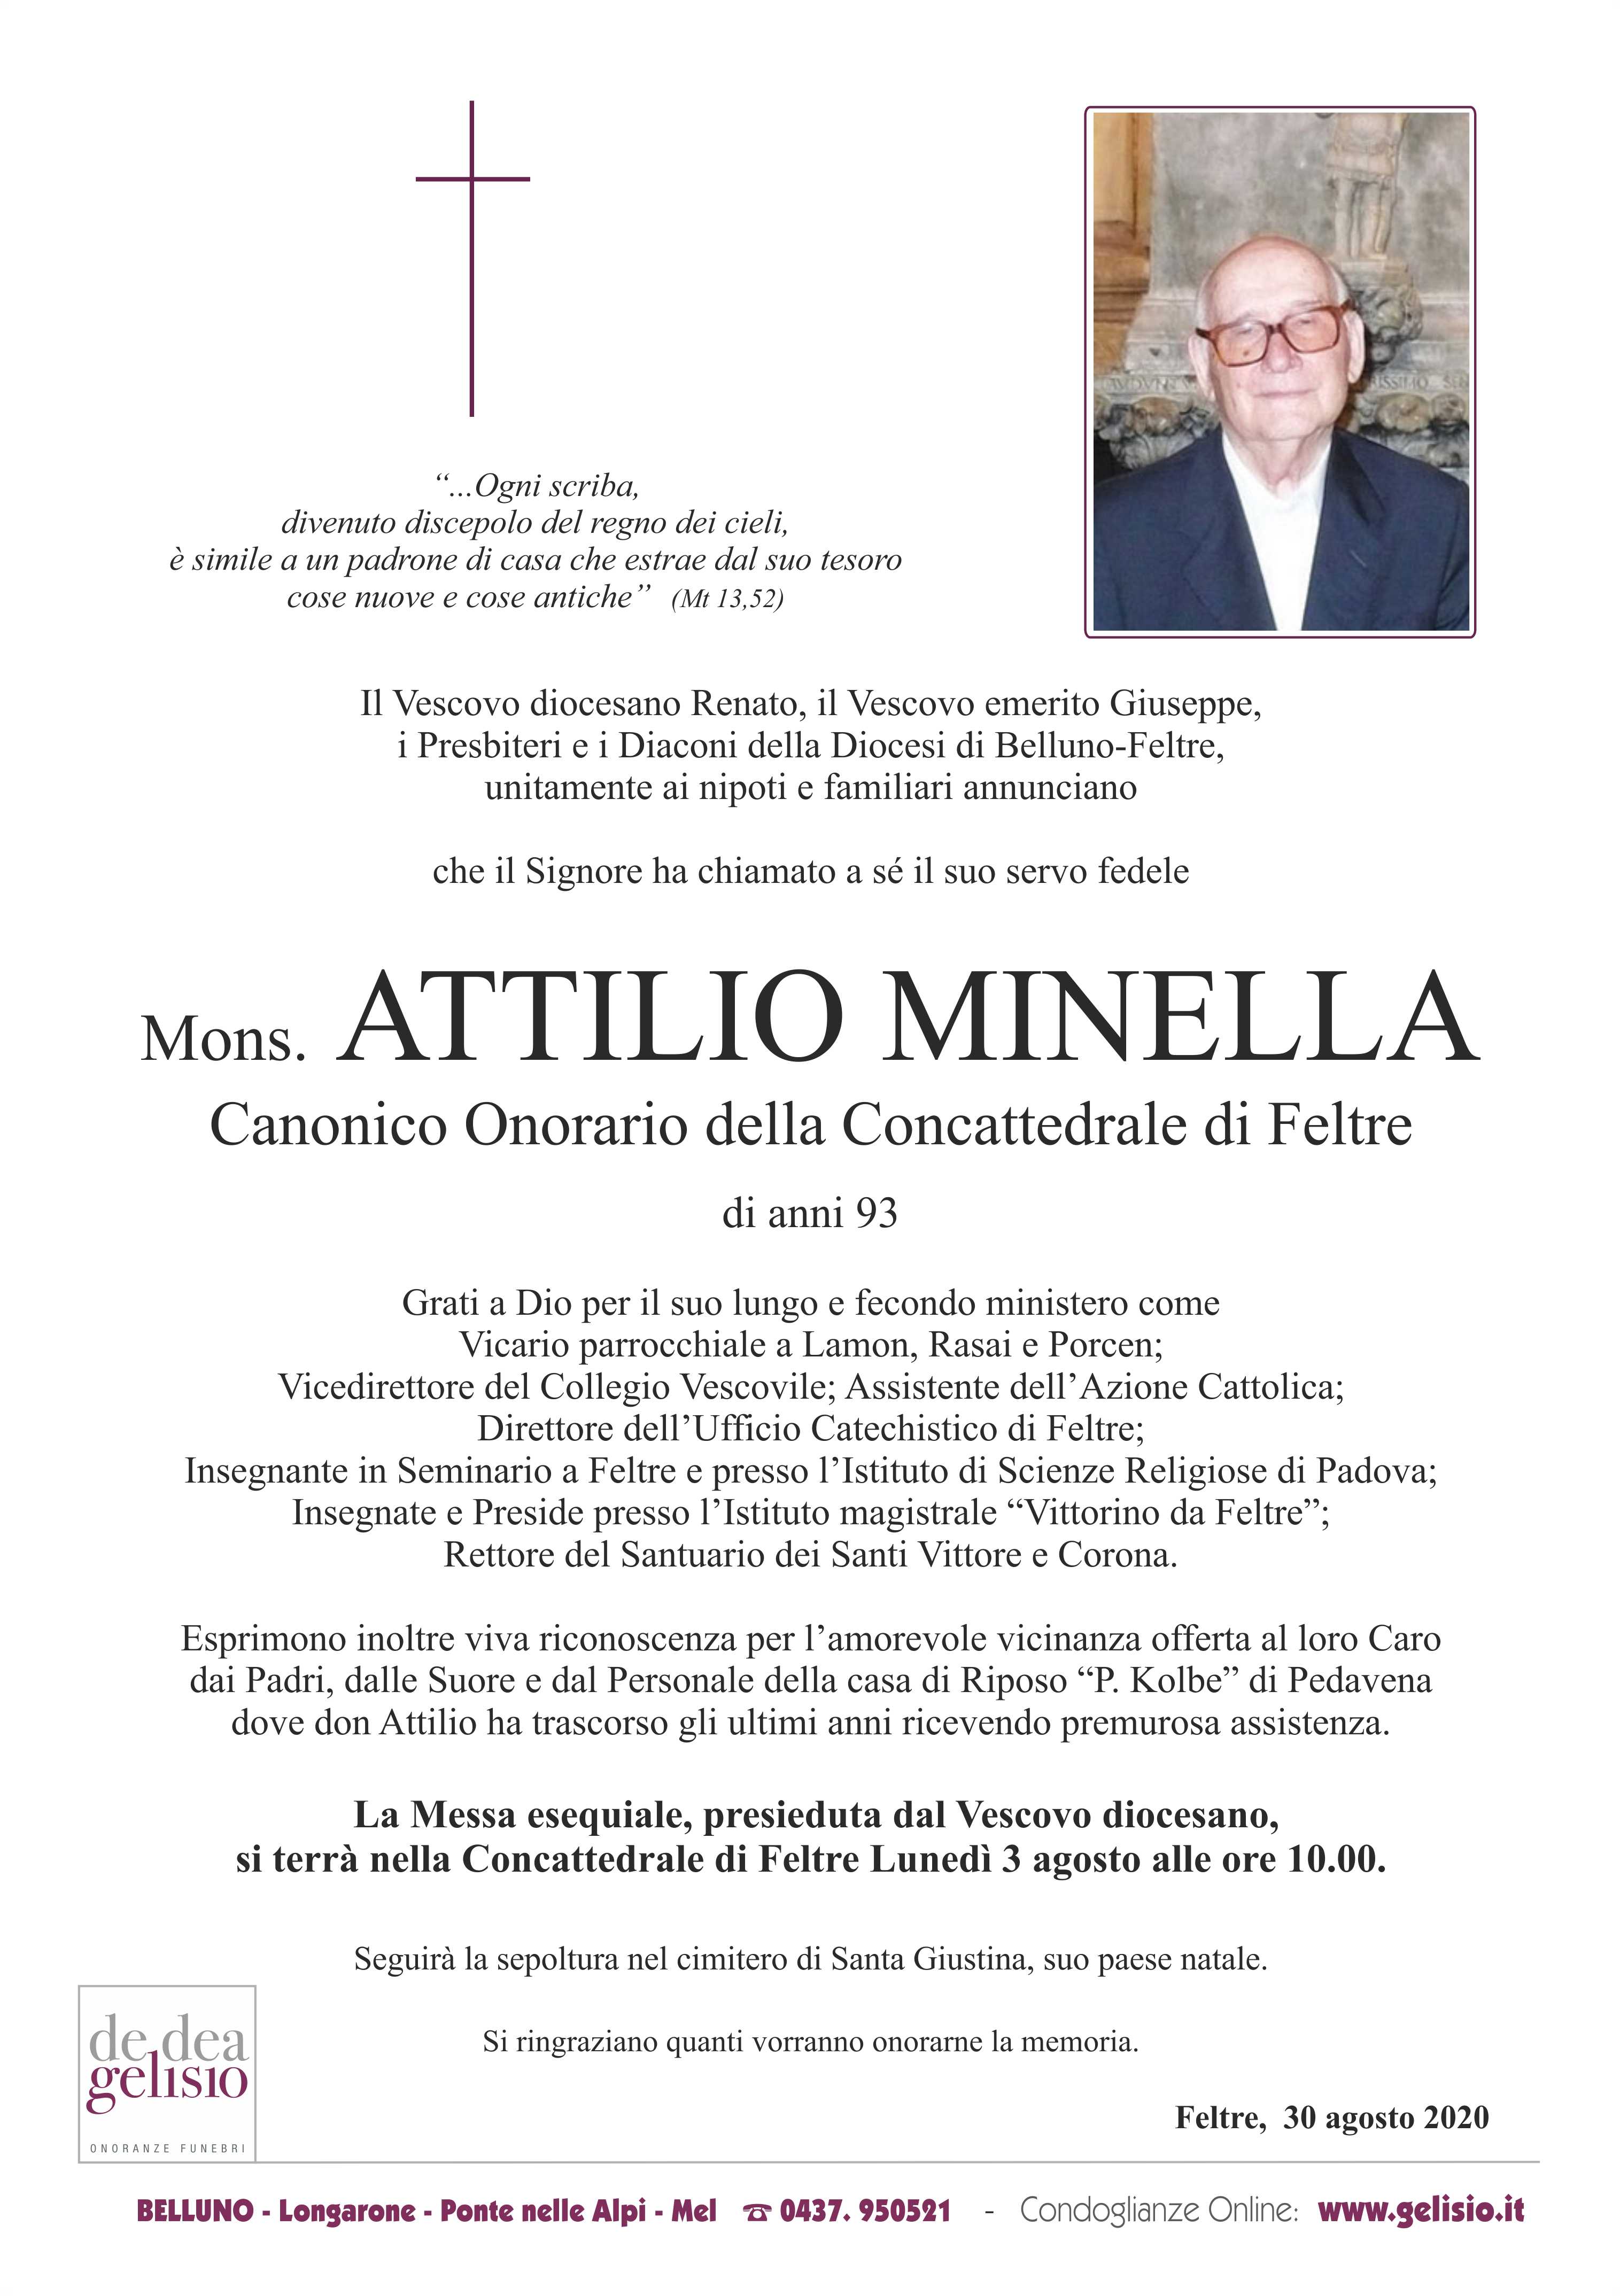 Don Attilio Minella